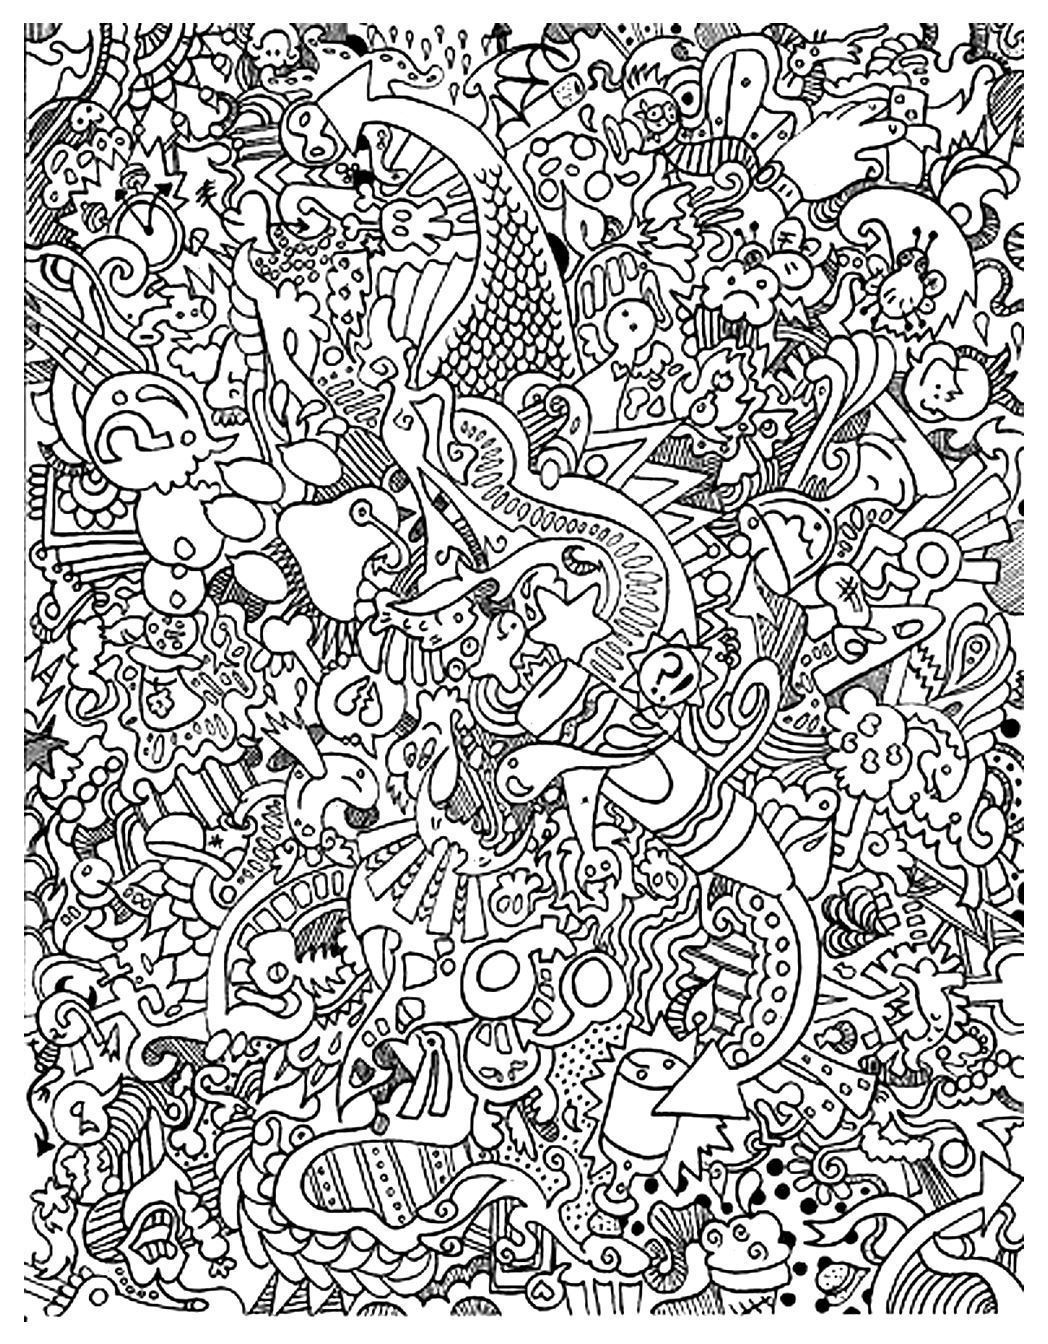 Doodling gribouillage doodle art - 6